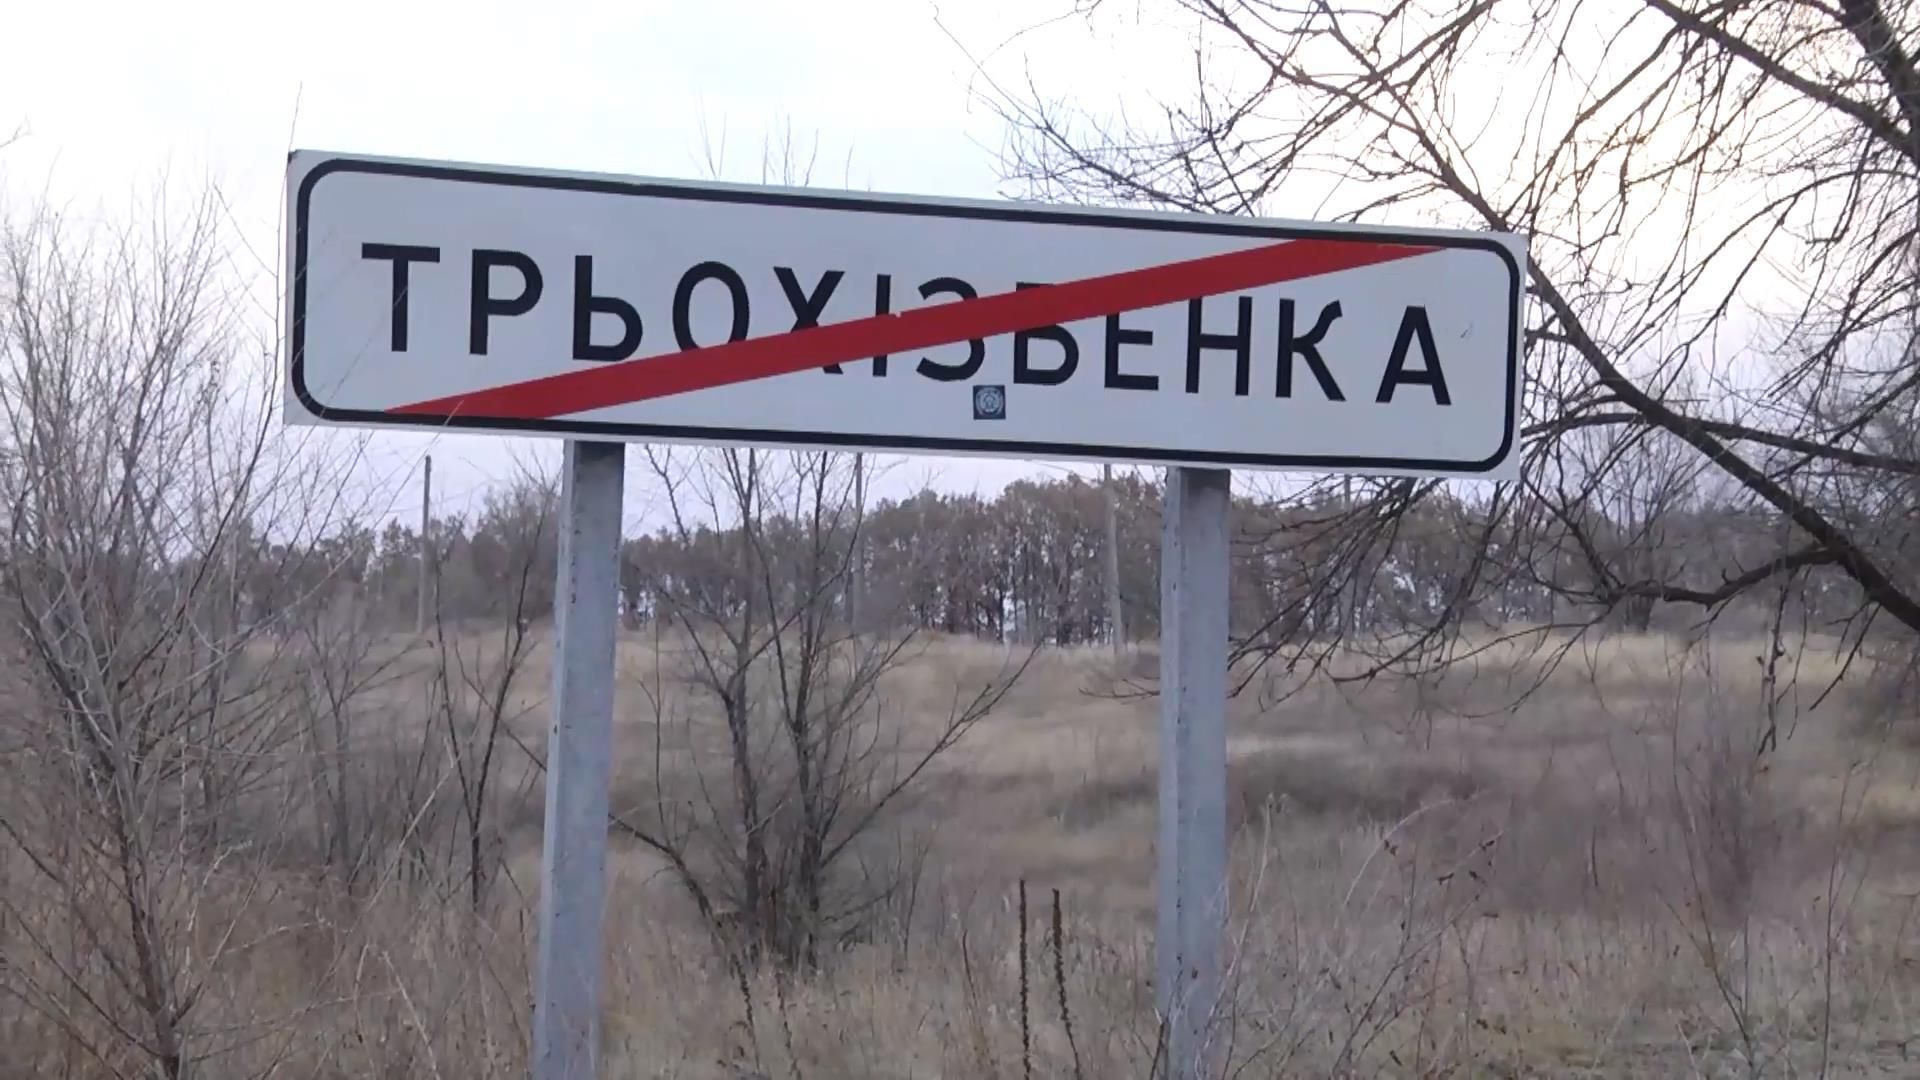 Терористи "ДНР-ЛНР" знайшли новий спосіб порушувати Мінські угоди